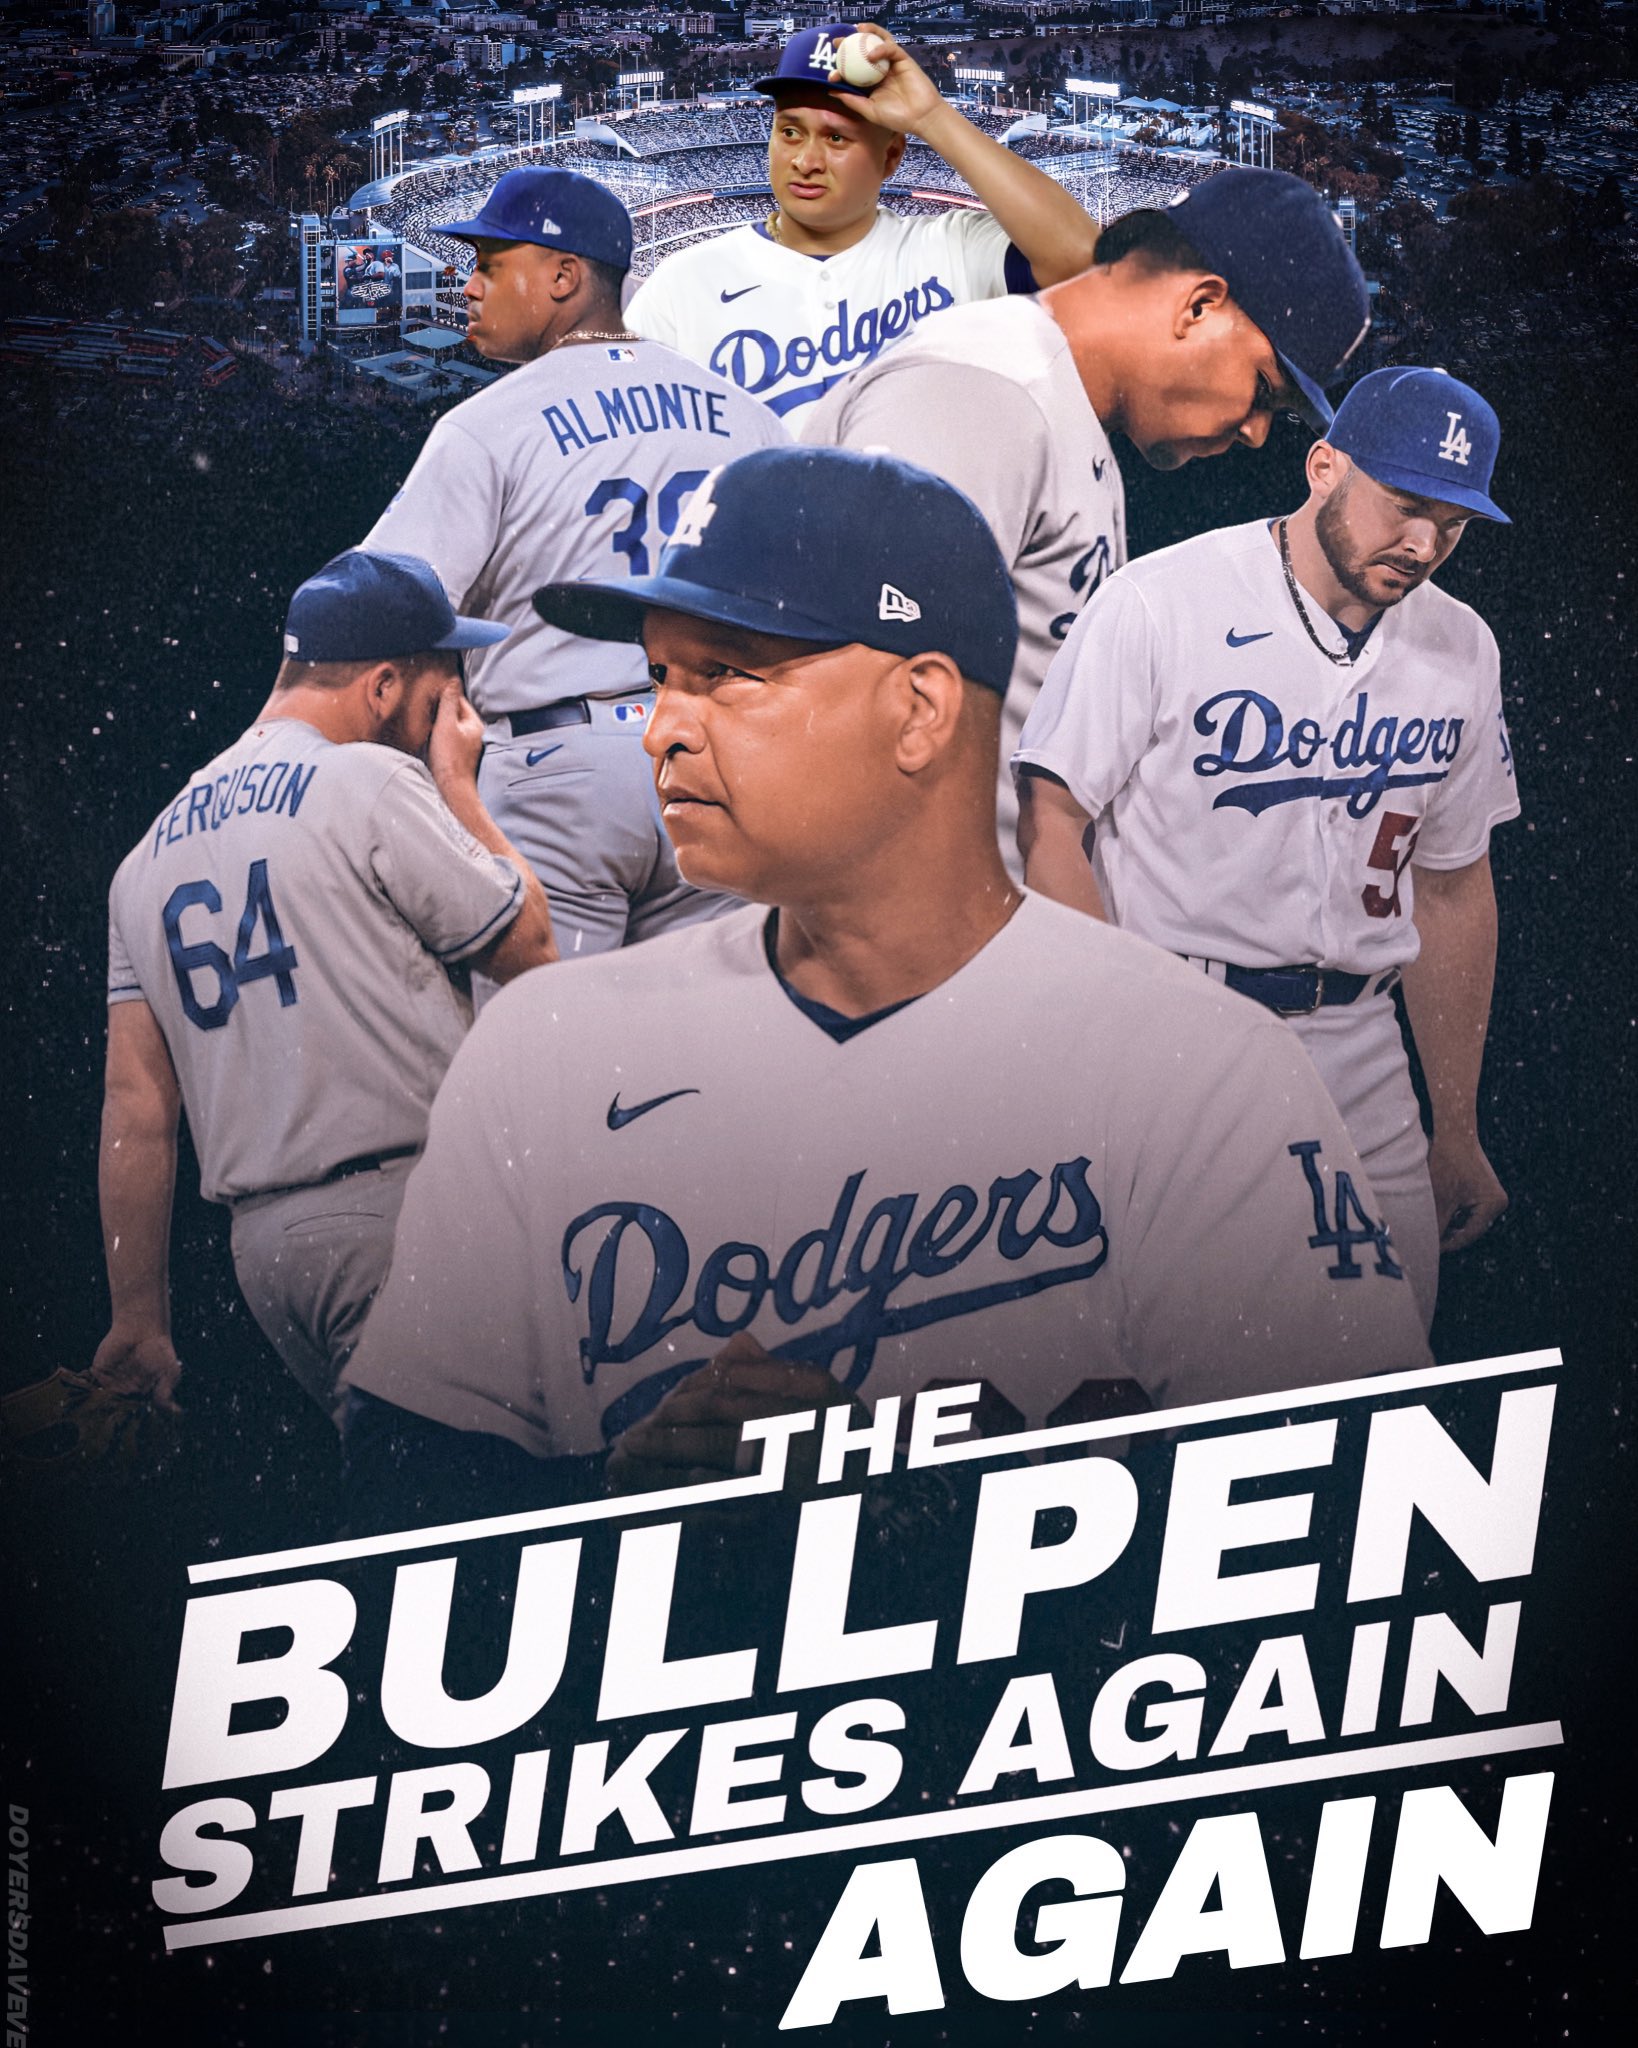 Dodgers Bullpen